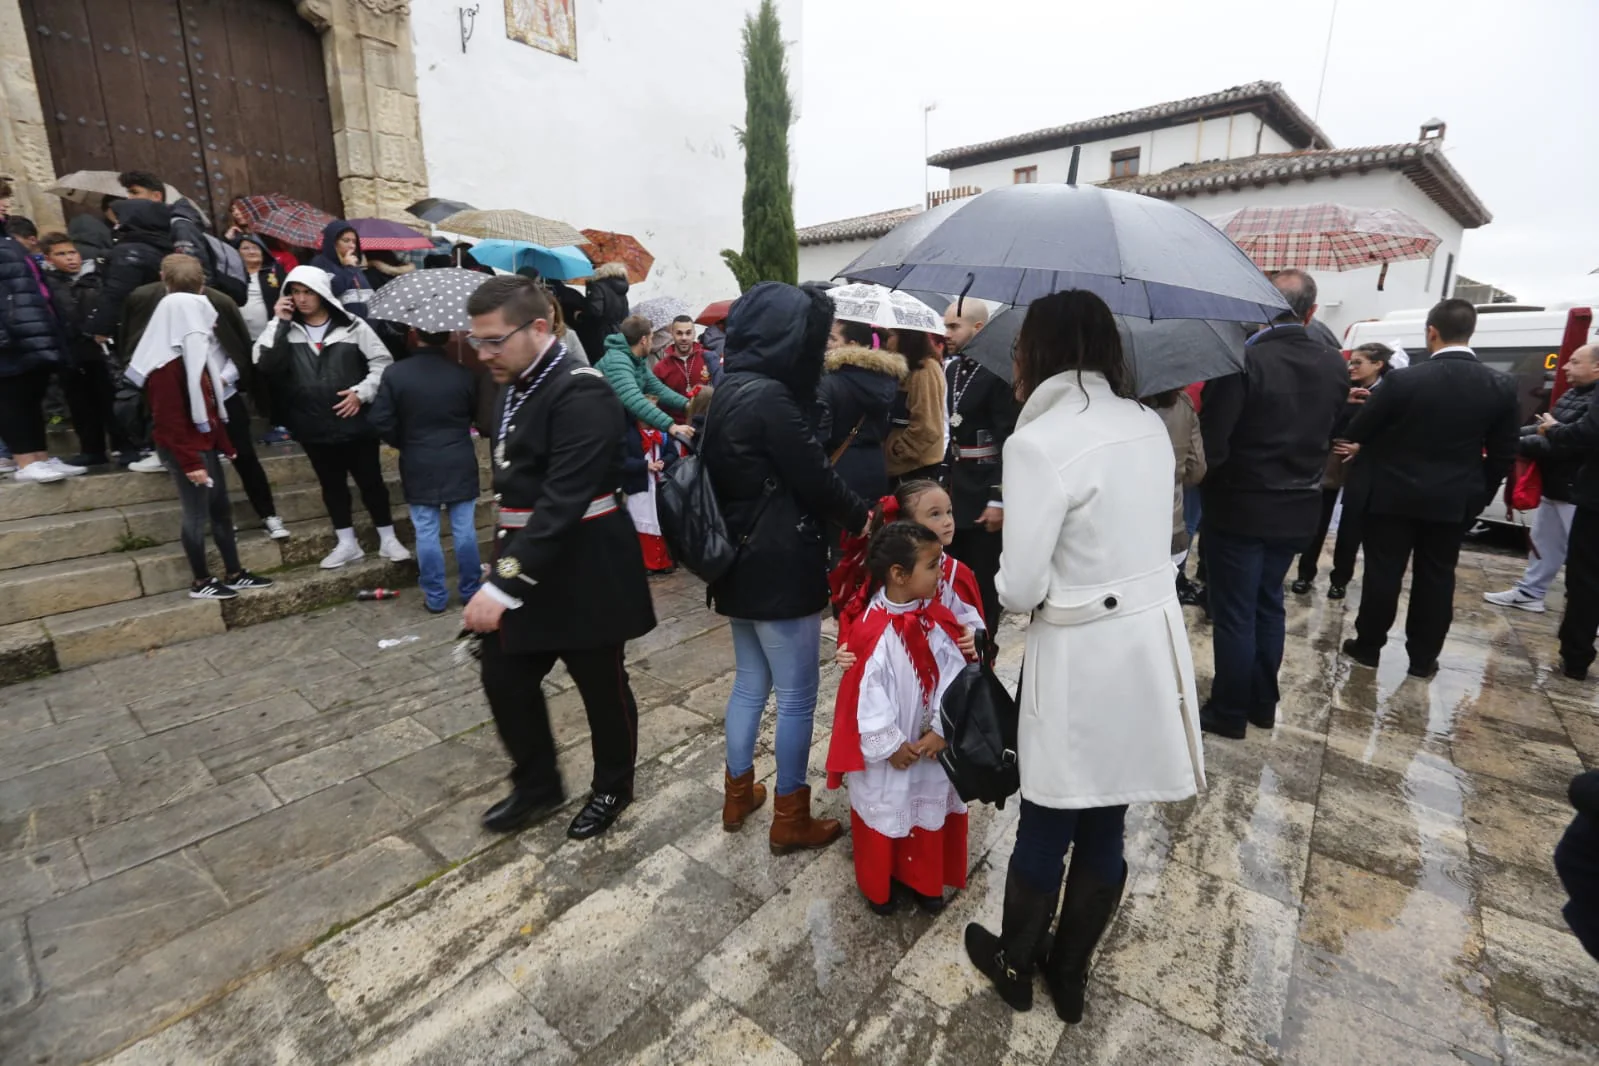 Paraguas y resignación en la placeta de San Miguel Bajo